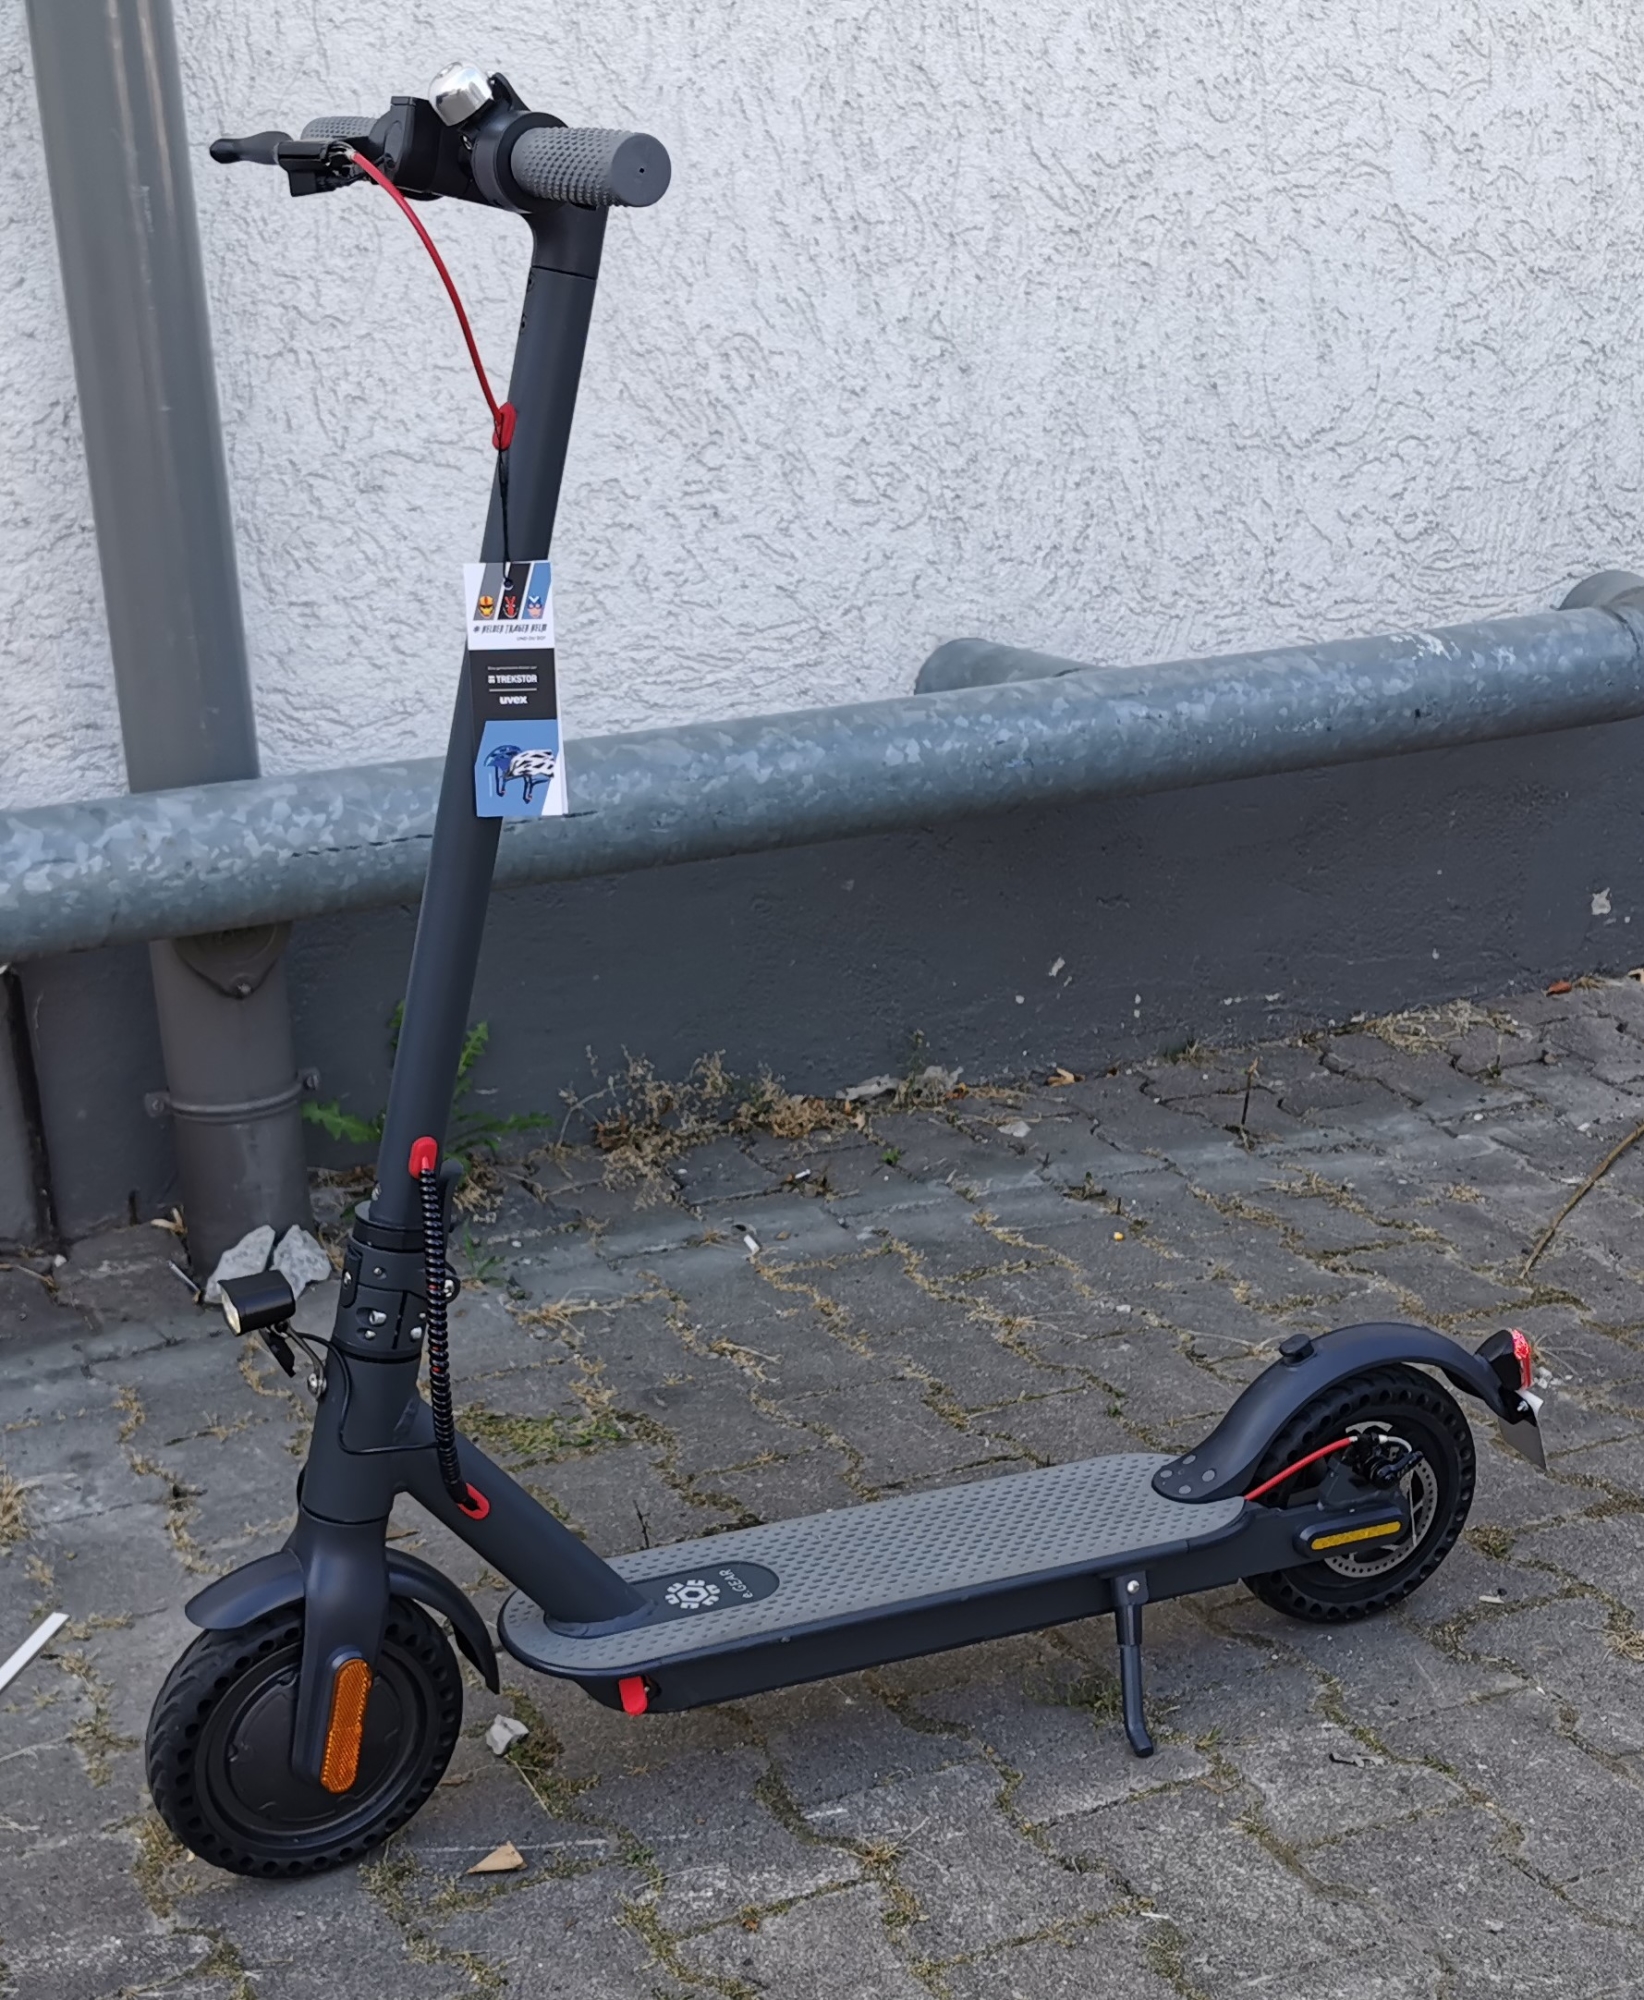 E-Scooter von Trekstor mit abnehmbarem Akku | heise online